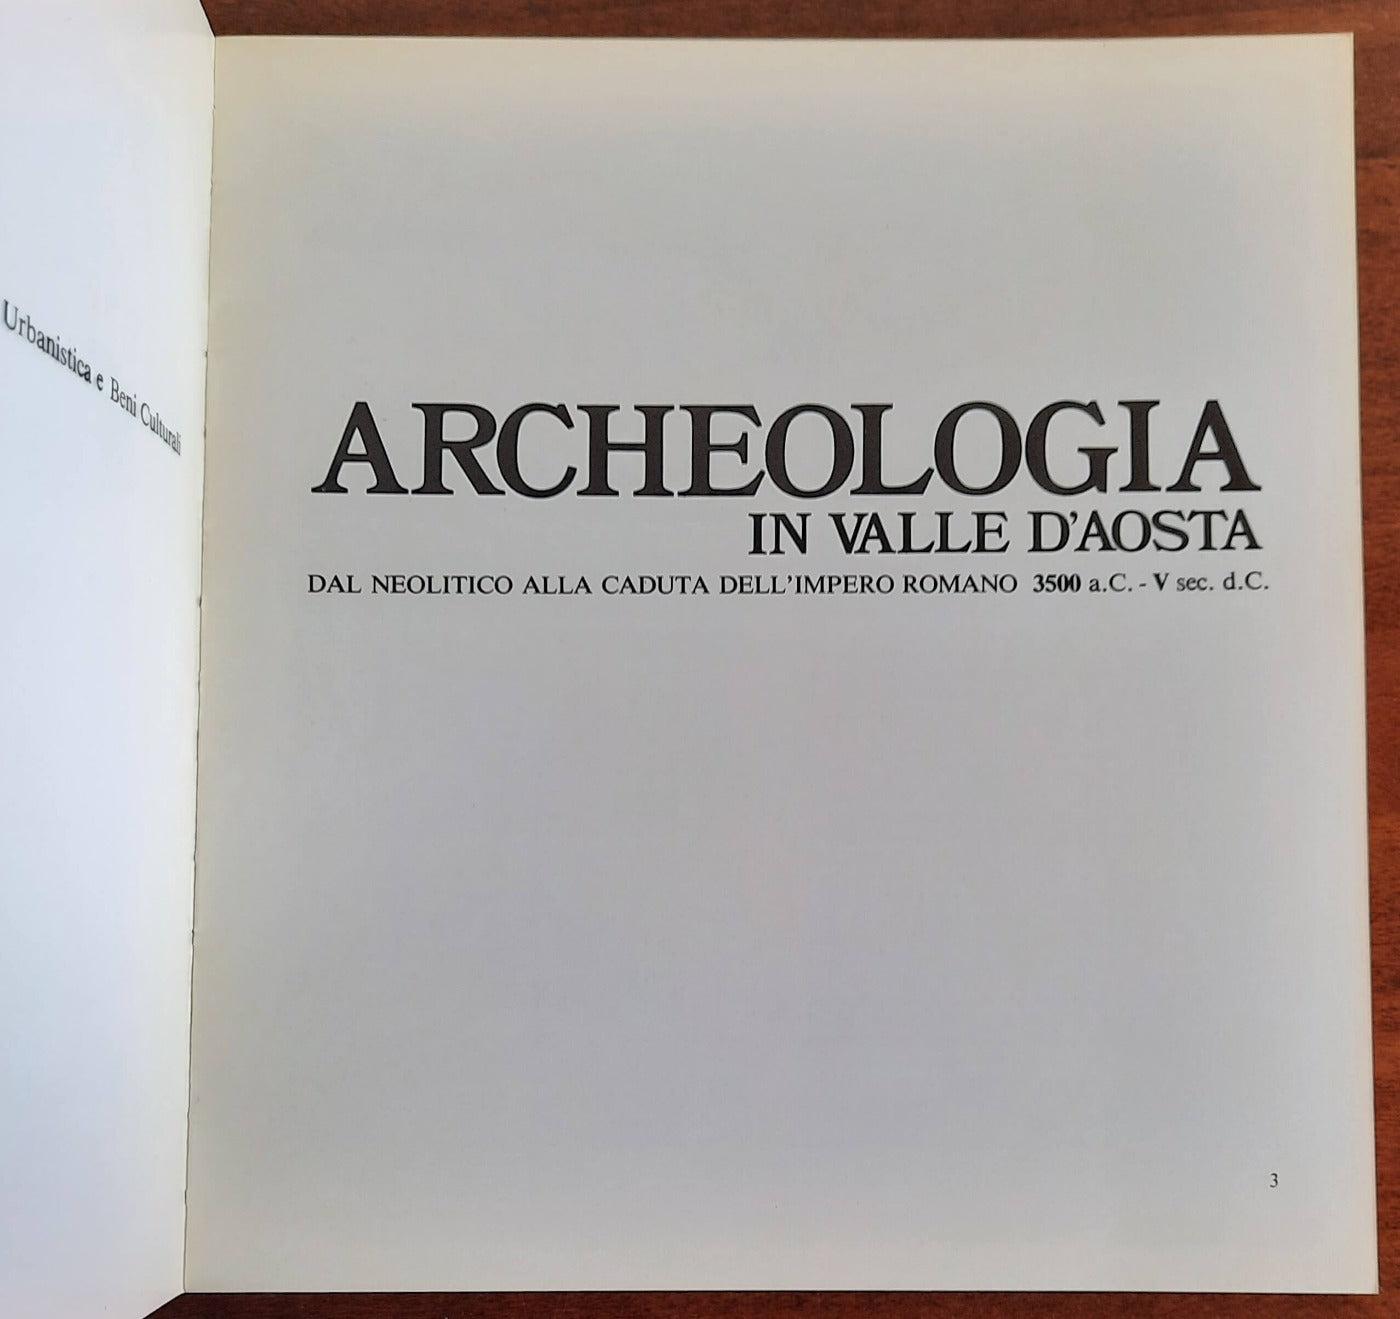 Archeologia in Valle d’Aosta. Dal neolitico alla caduta dell’Impero romano 3500 a.C. - V sec. d.C.